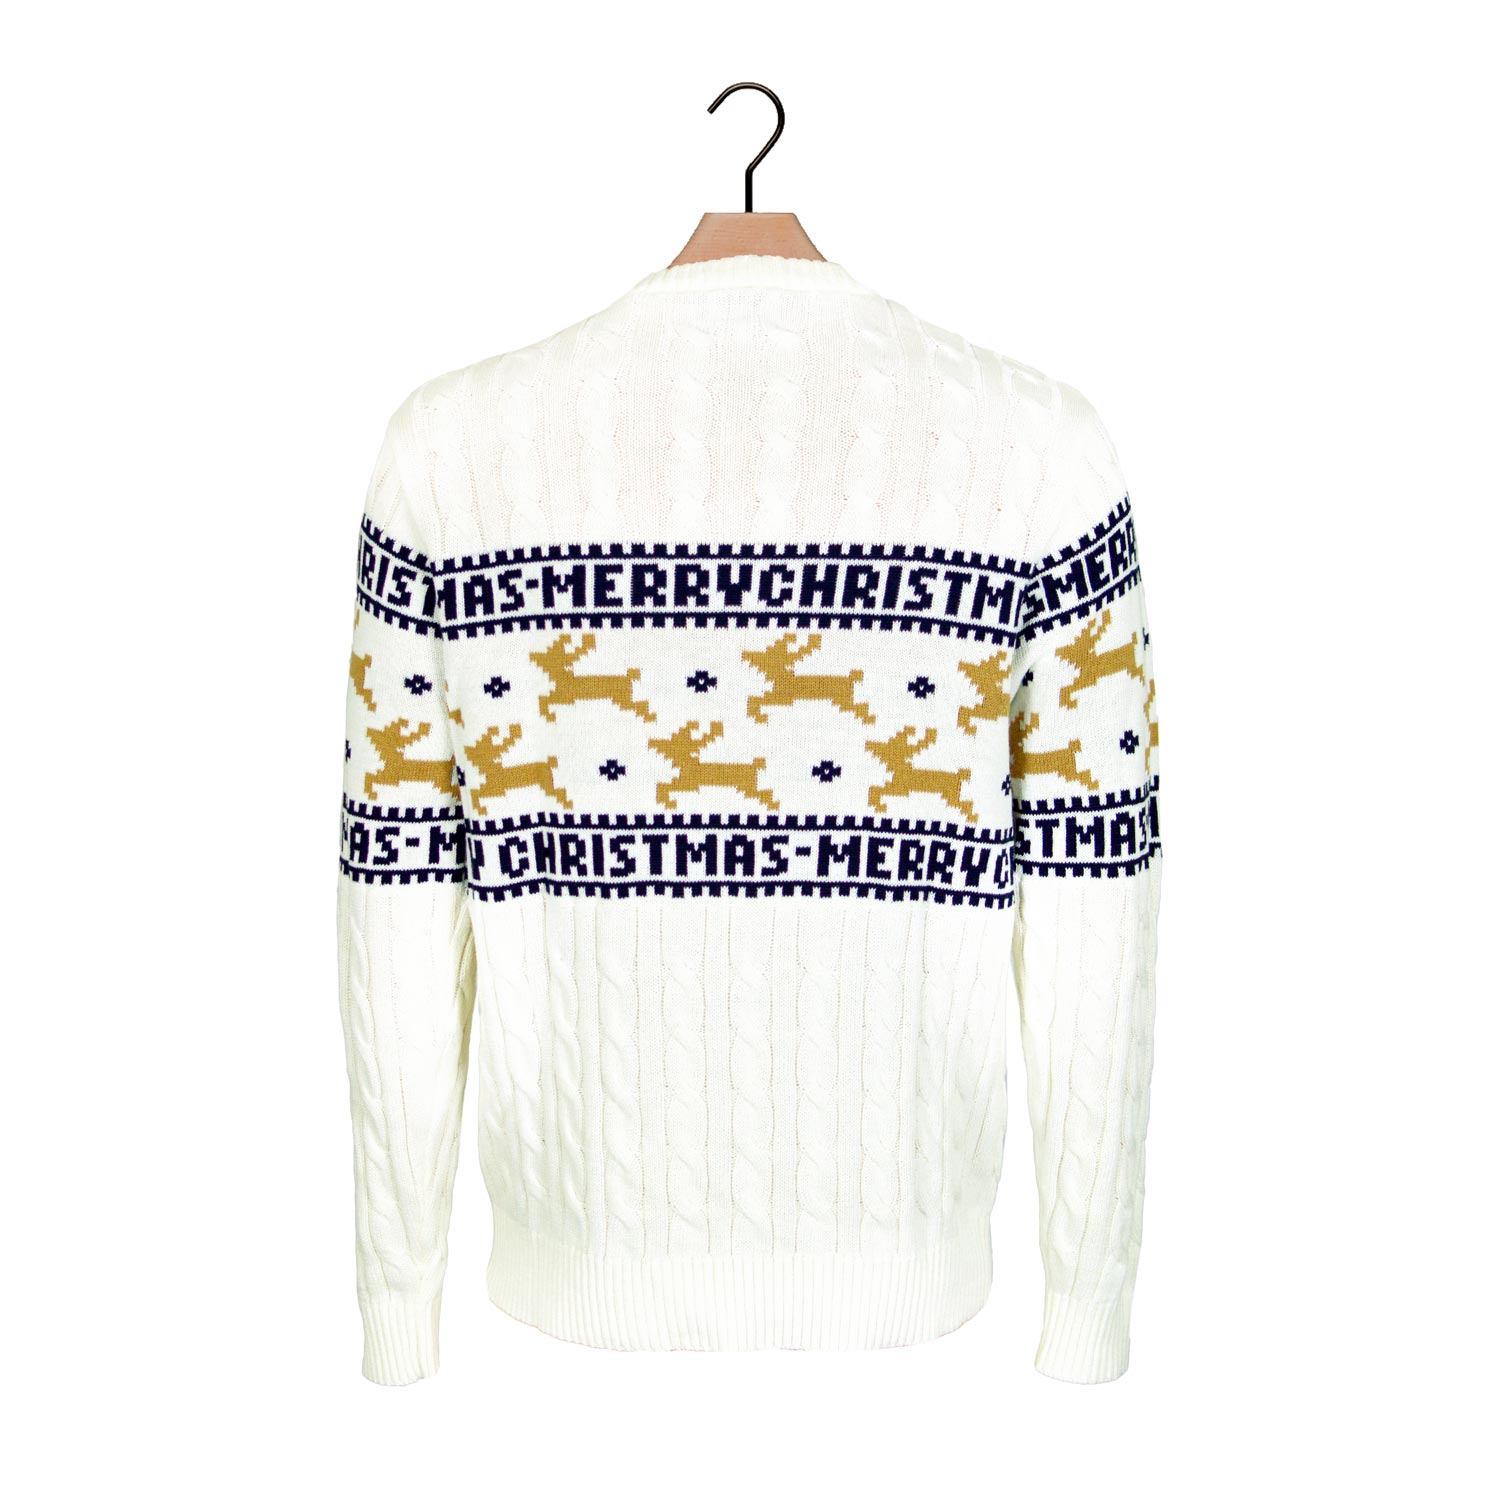 Biały Sweter Świąteczny dla Dzieci Bawełny Organicznej Elegancki z Reniferami z powrotem